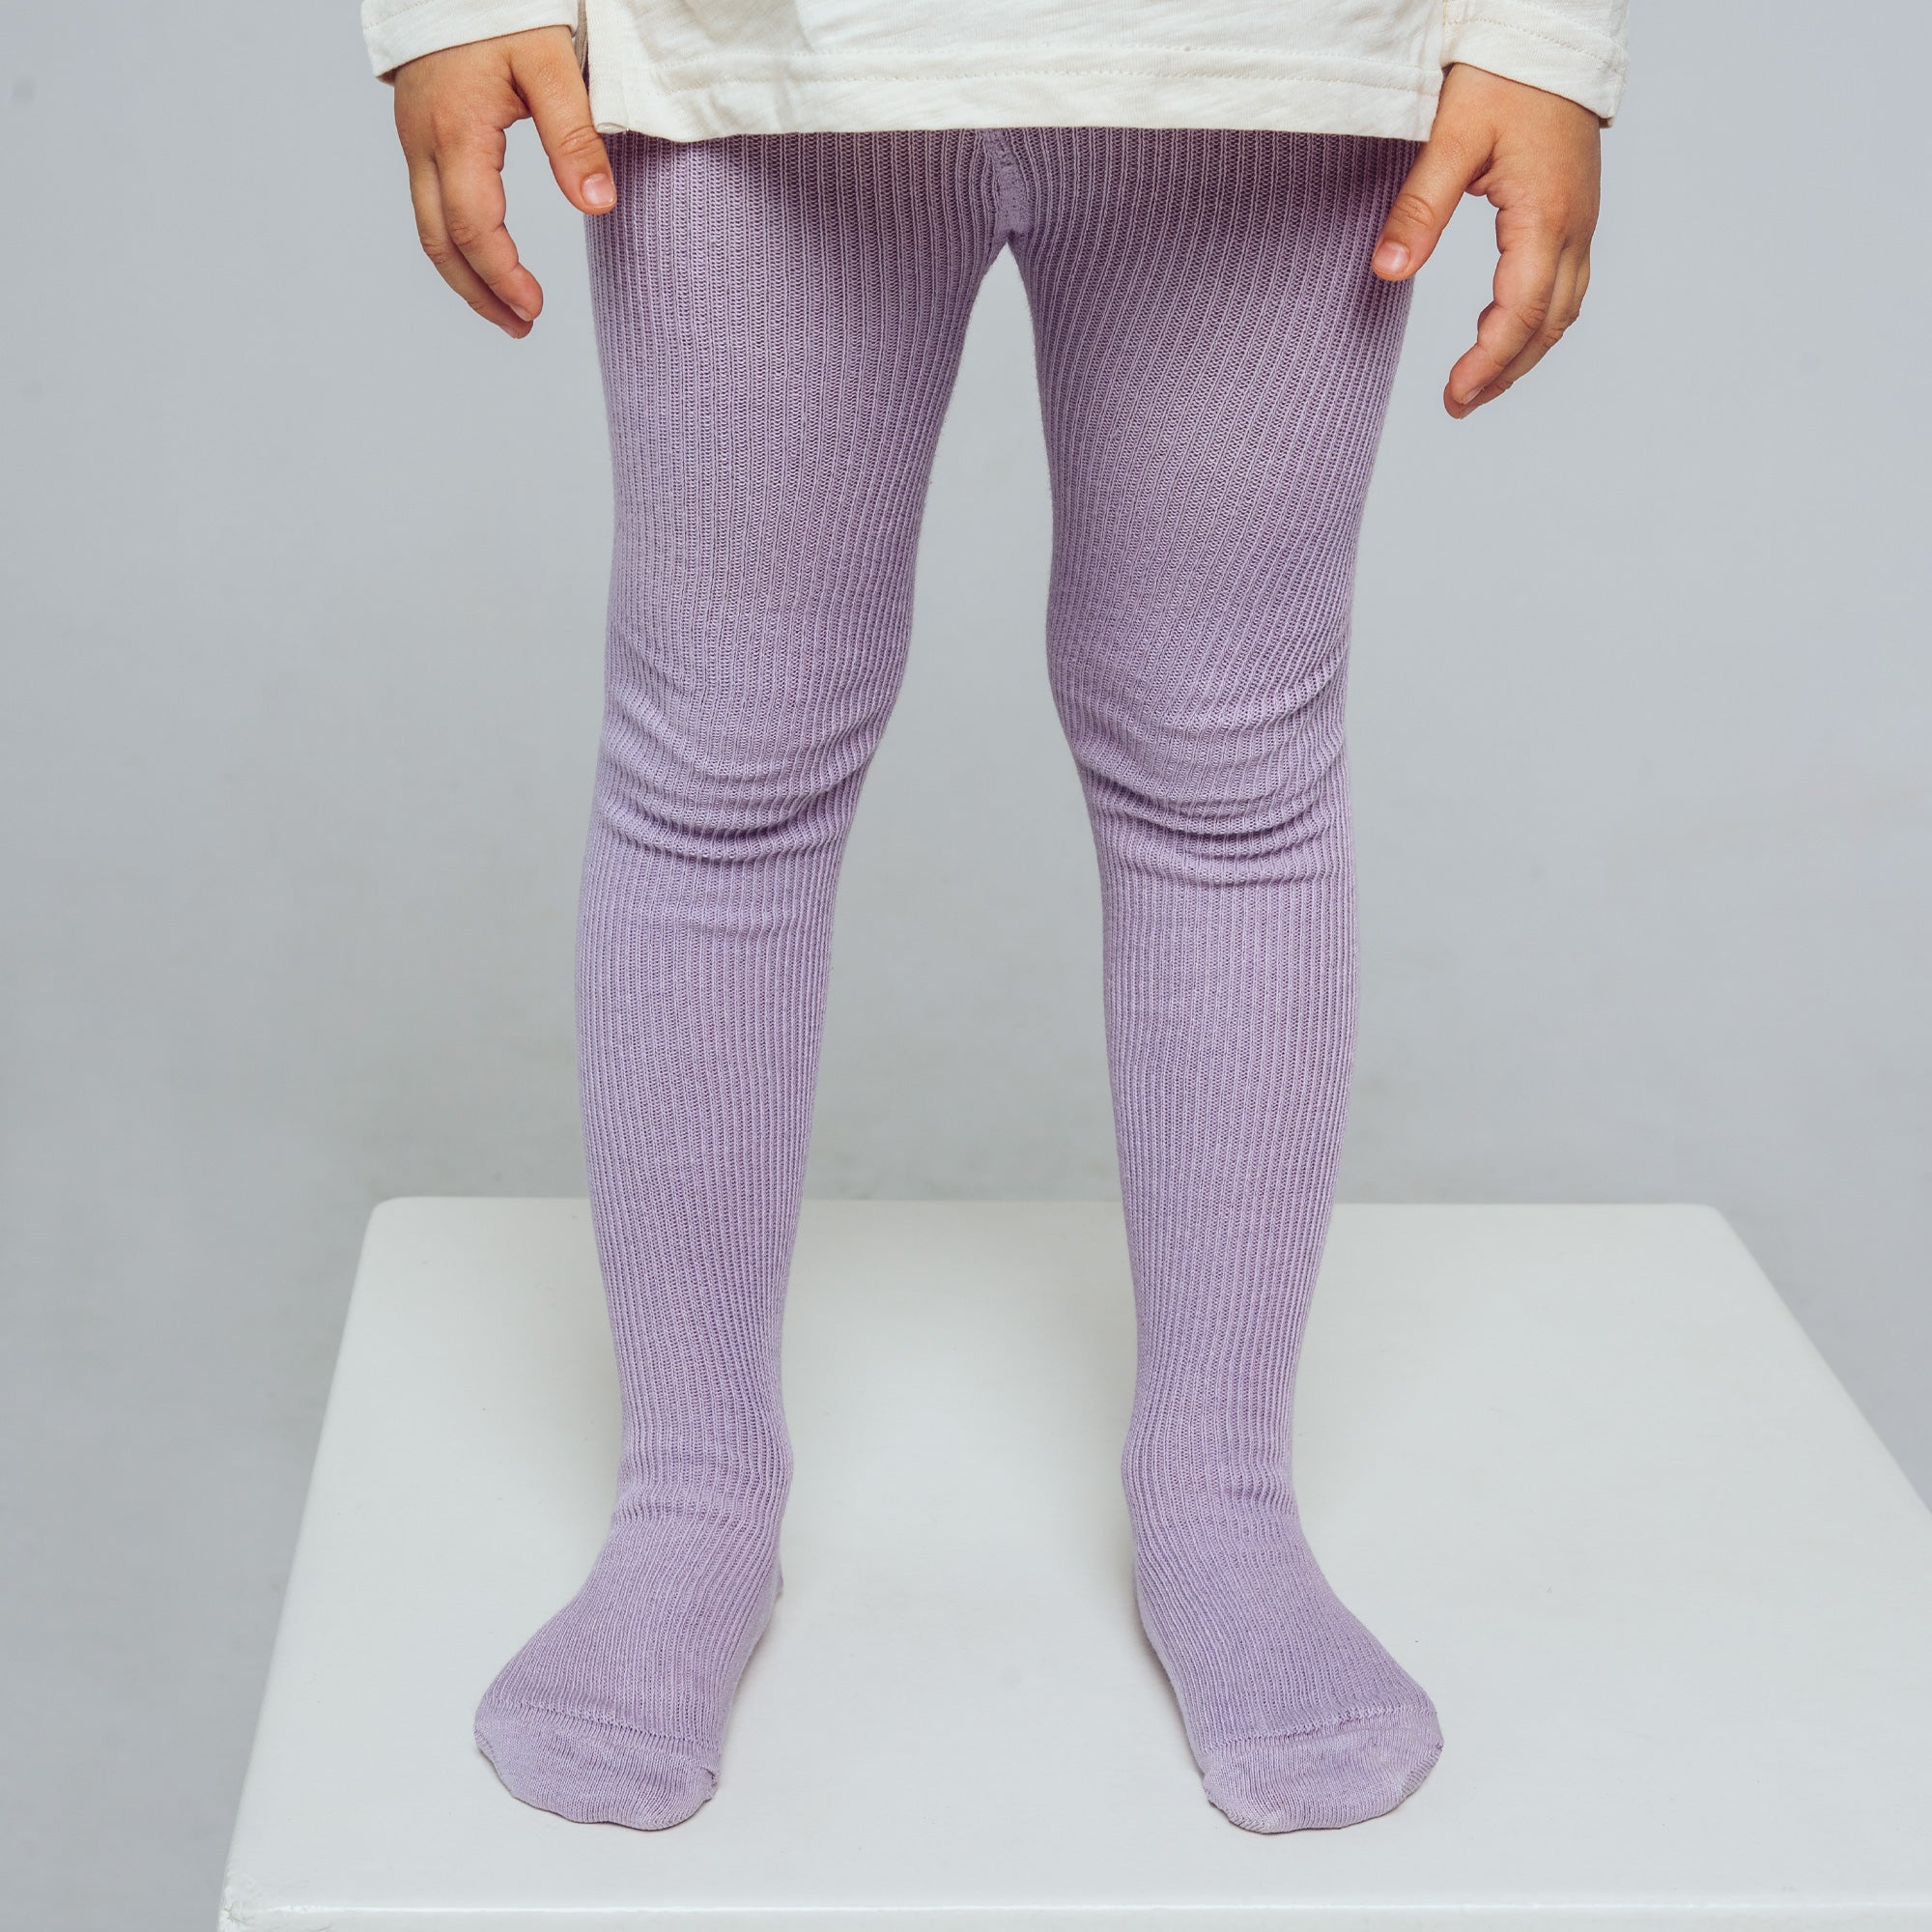 Collants sans bretelles - Violet pastel